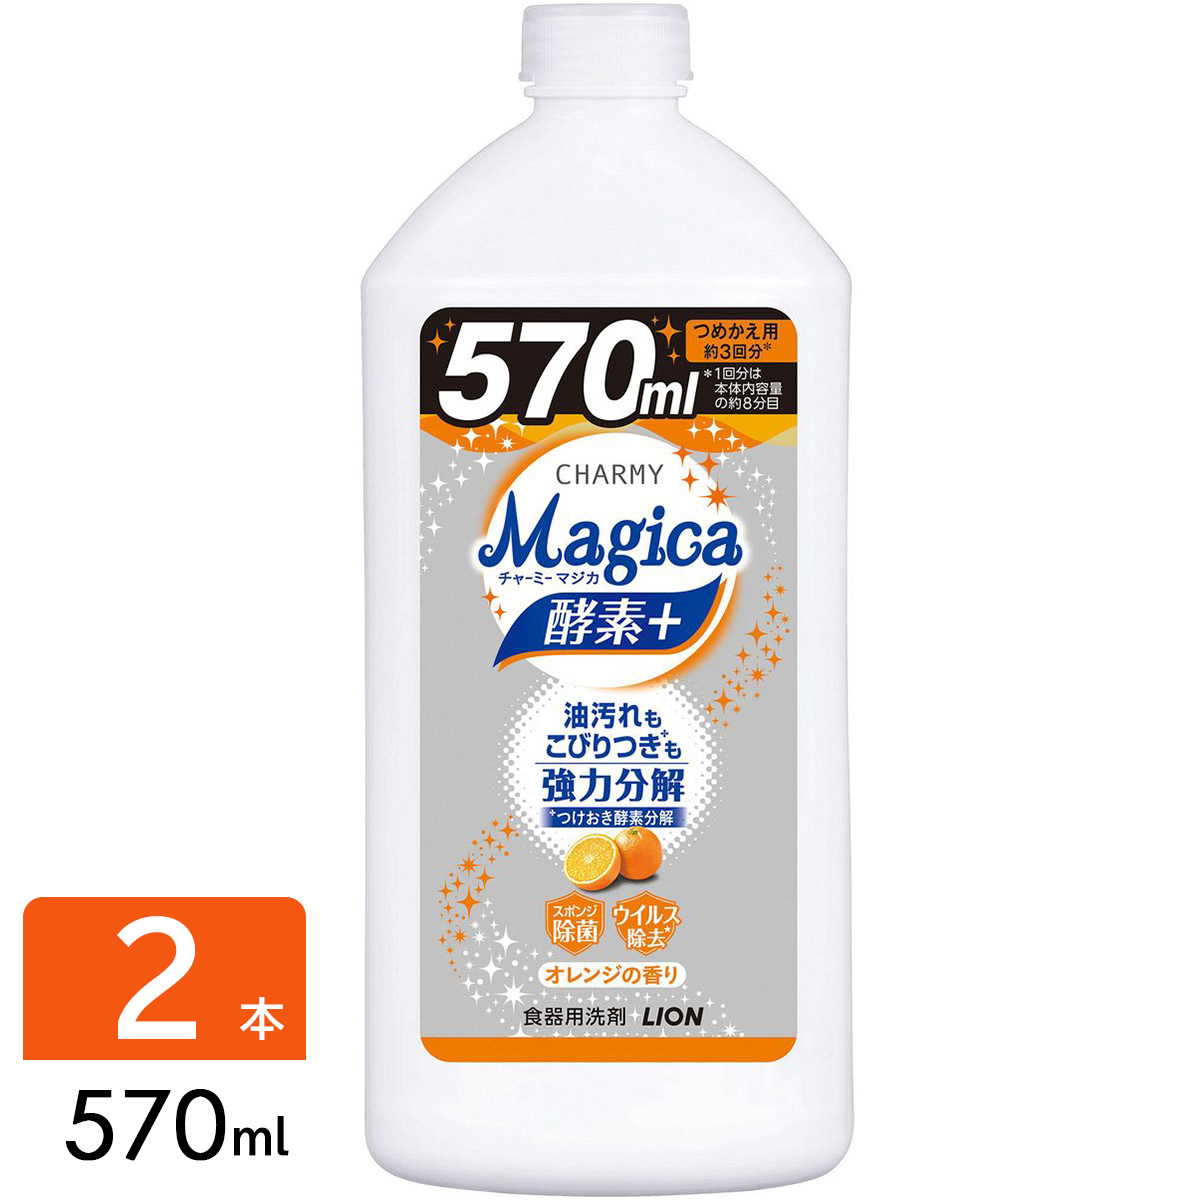 CHARMY チャーミー Magica マジカ 酵素+ フルーティオレンジ 食器用洗剤 詰め替え 570ml 2本